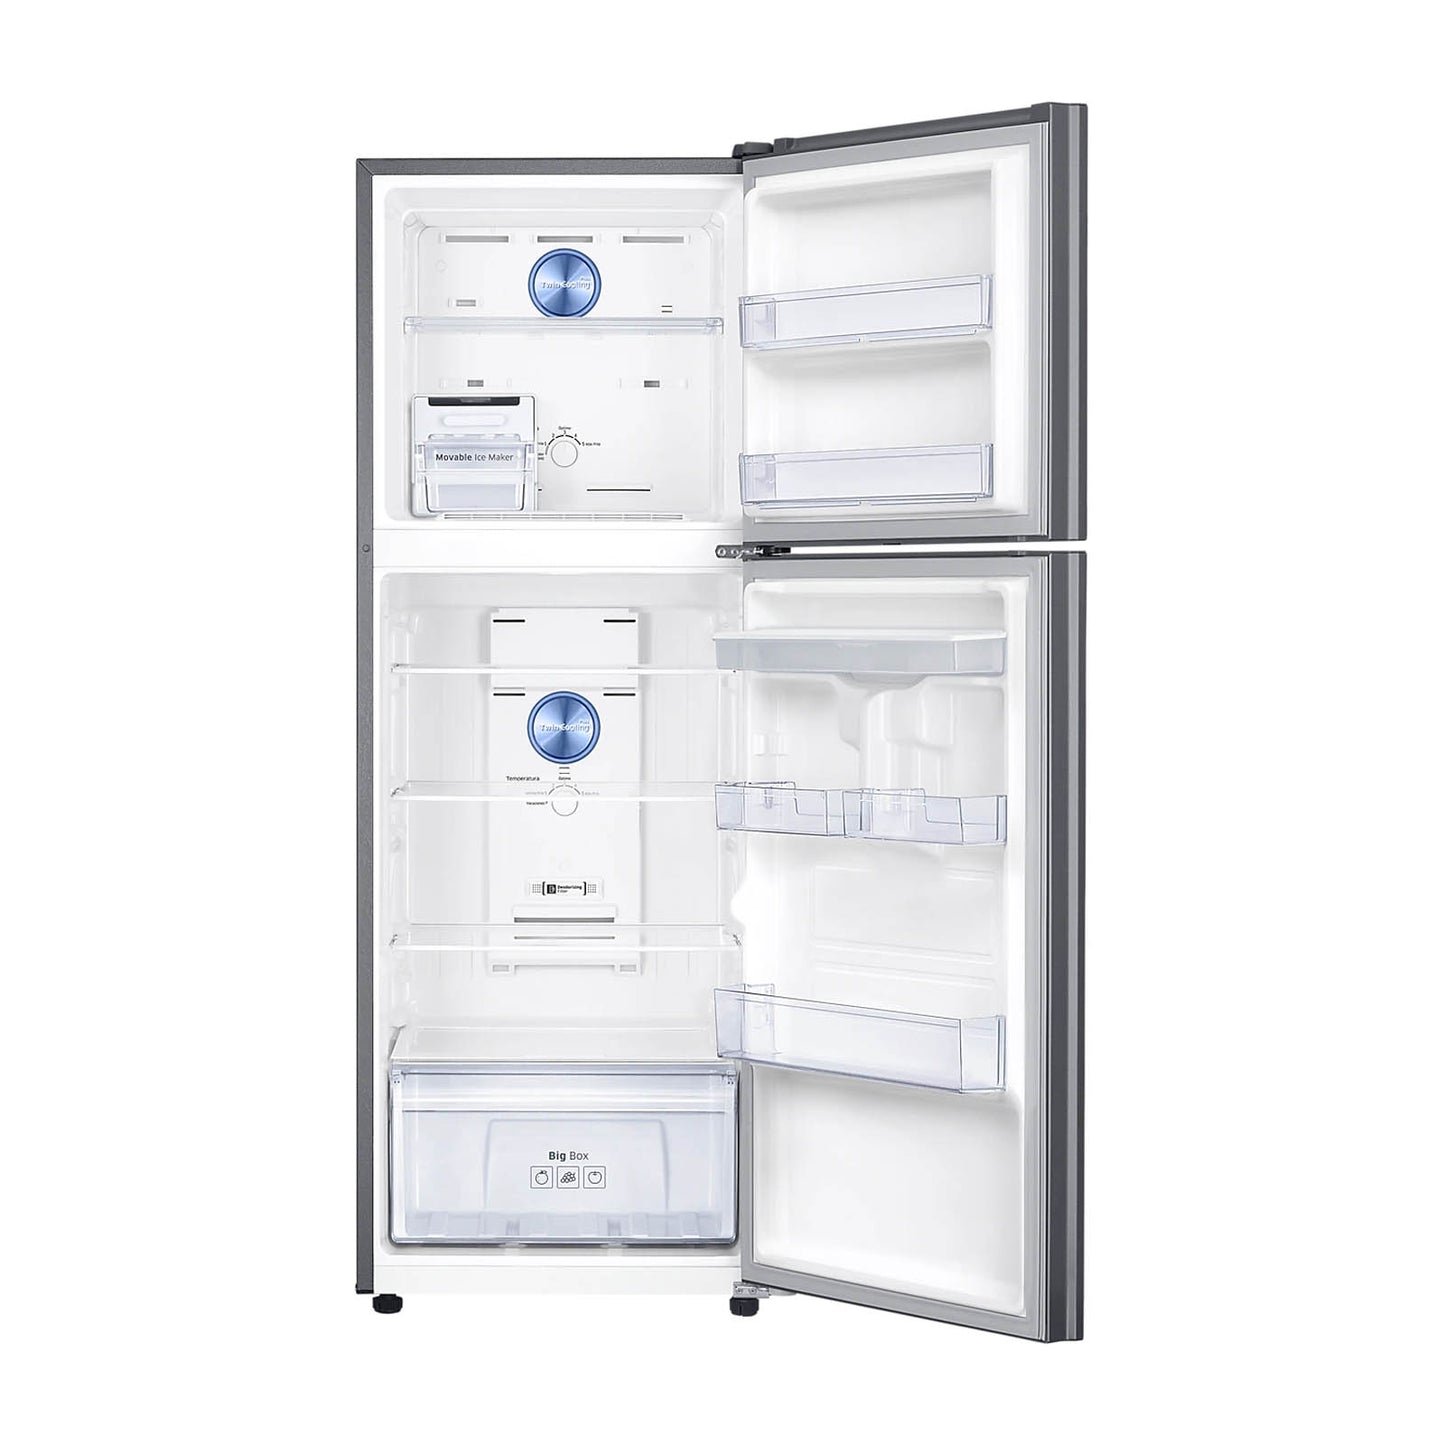 Refrigerador Samsung Top Mount 11 Pies Cúbicos con Despachador de Agua RT29A5710SL